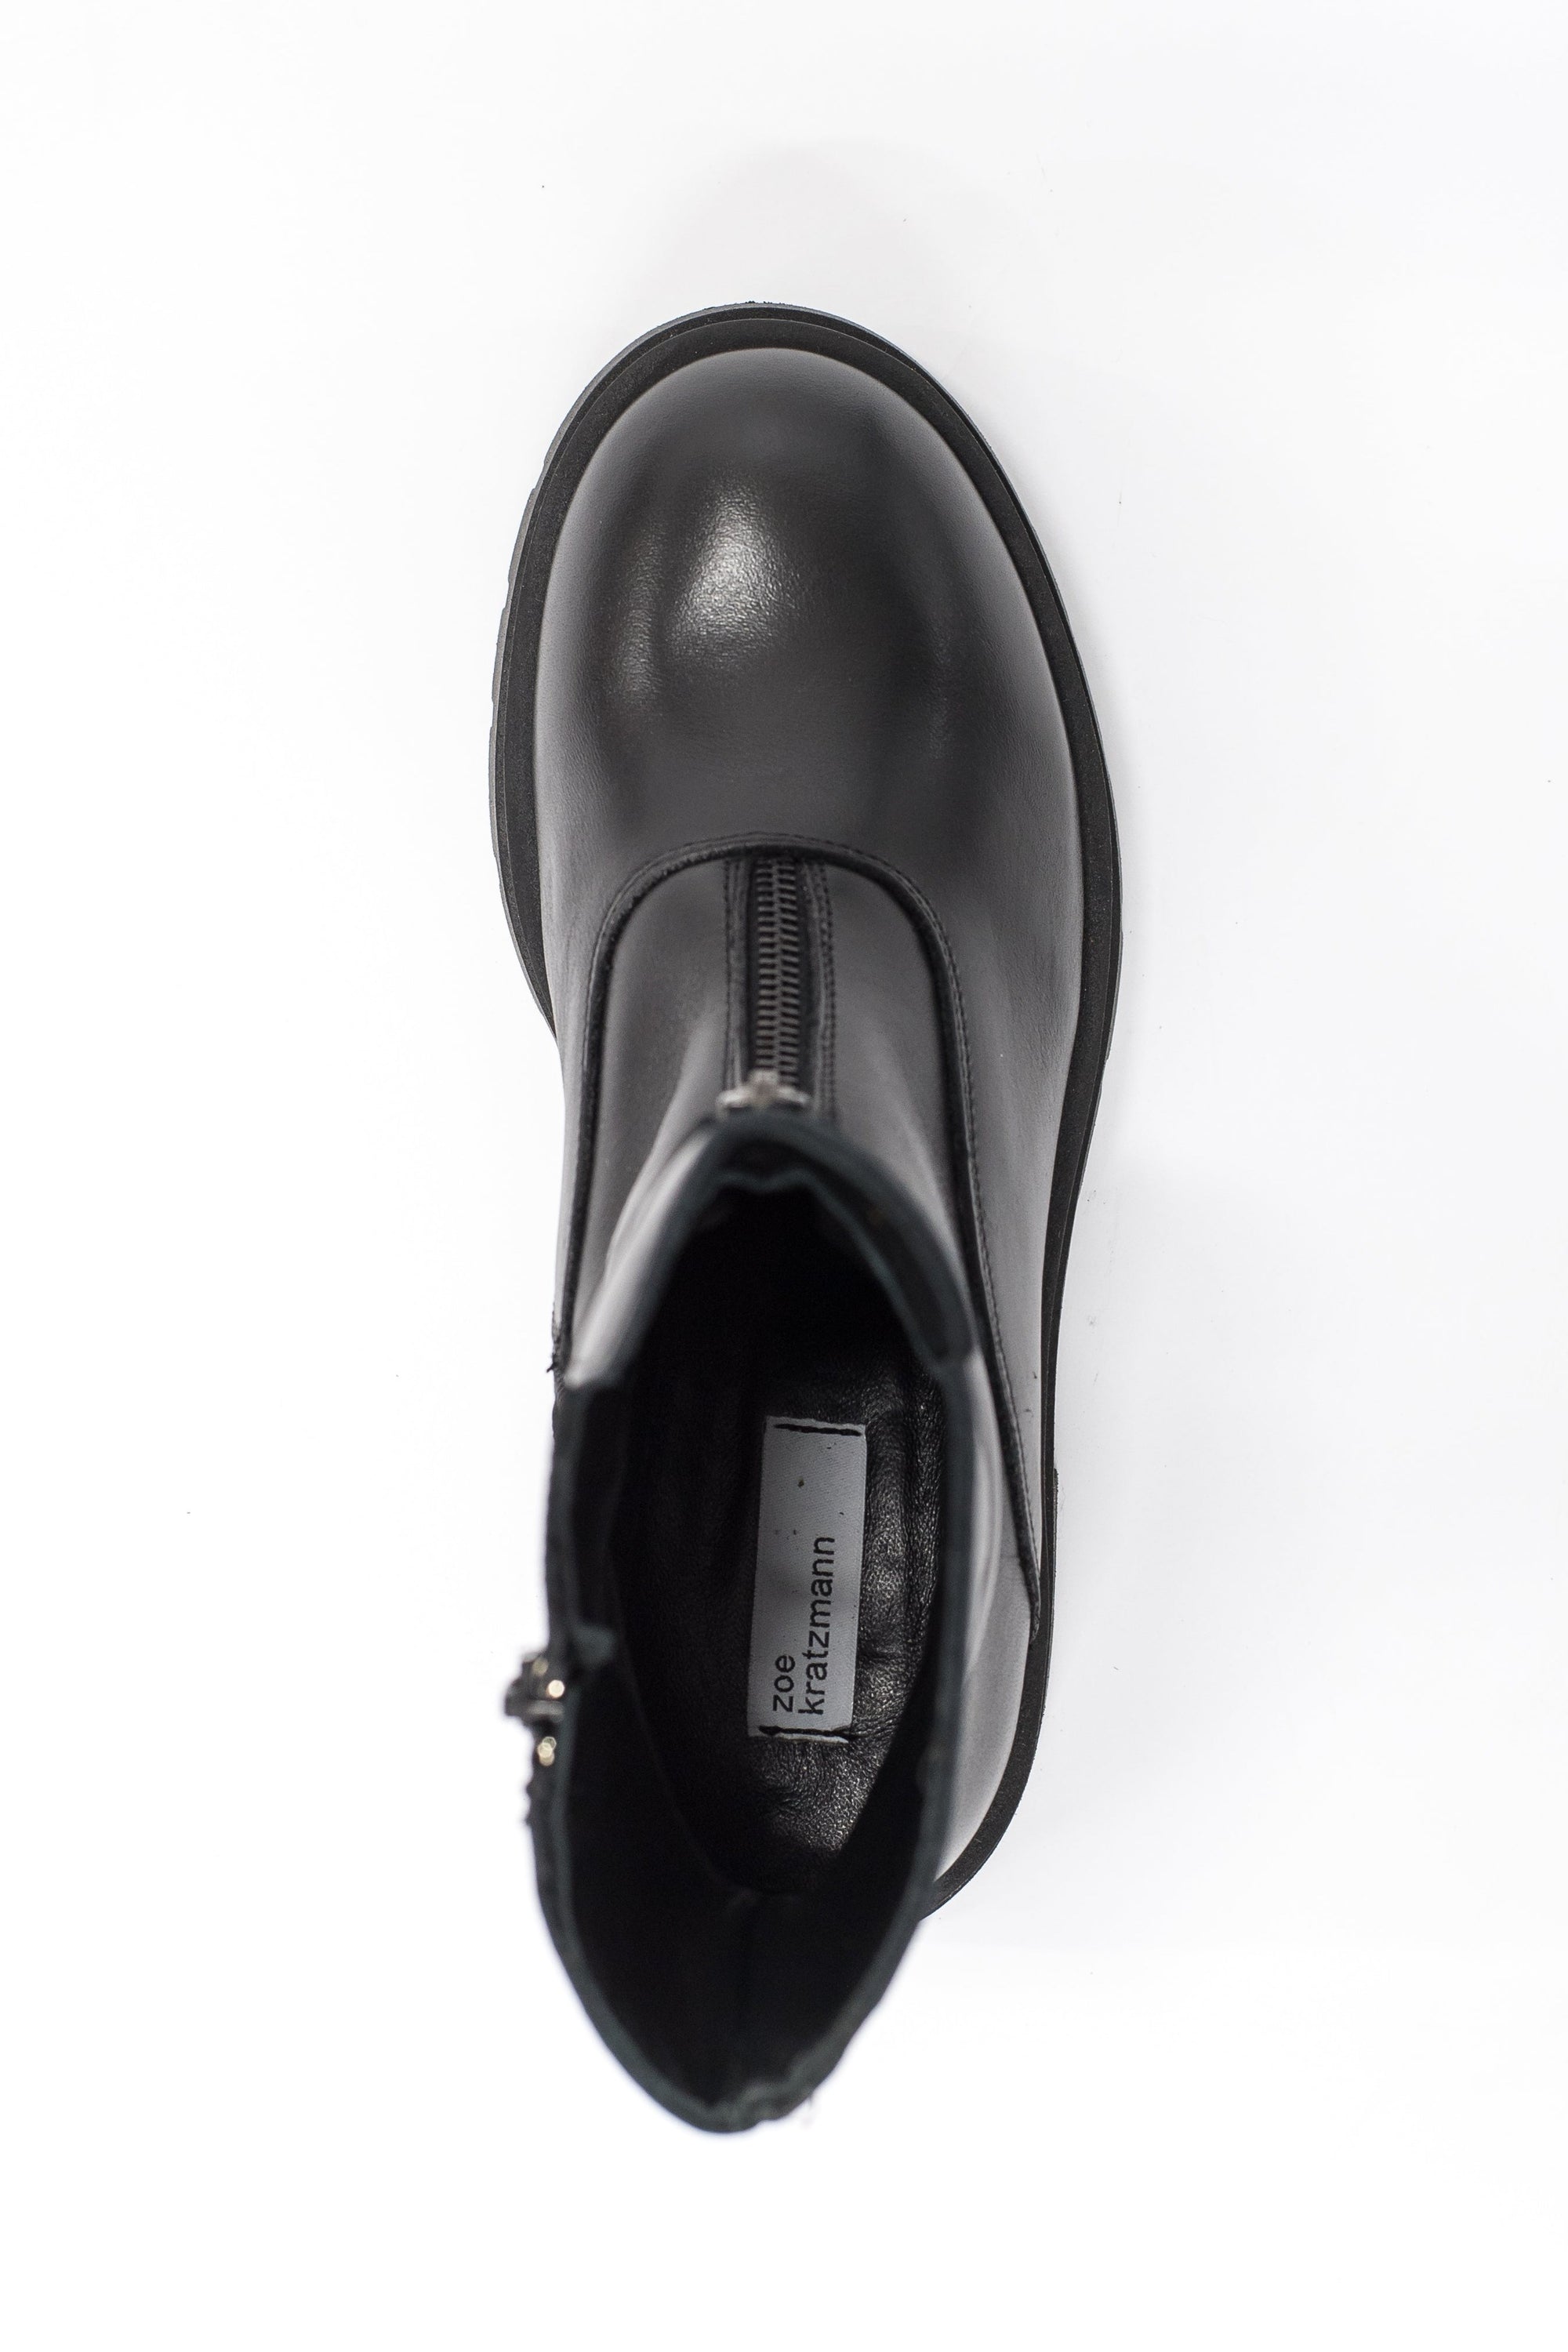 quaver boot - black leather